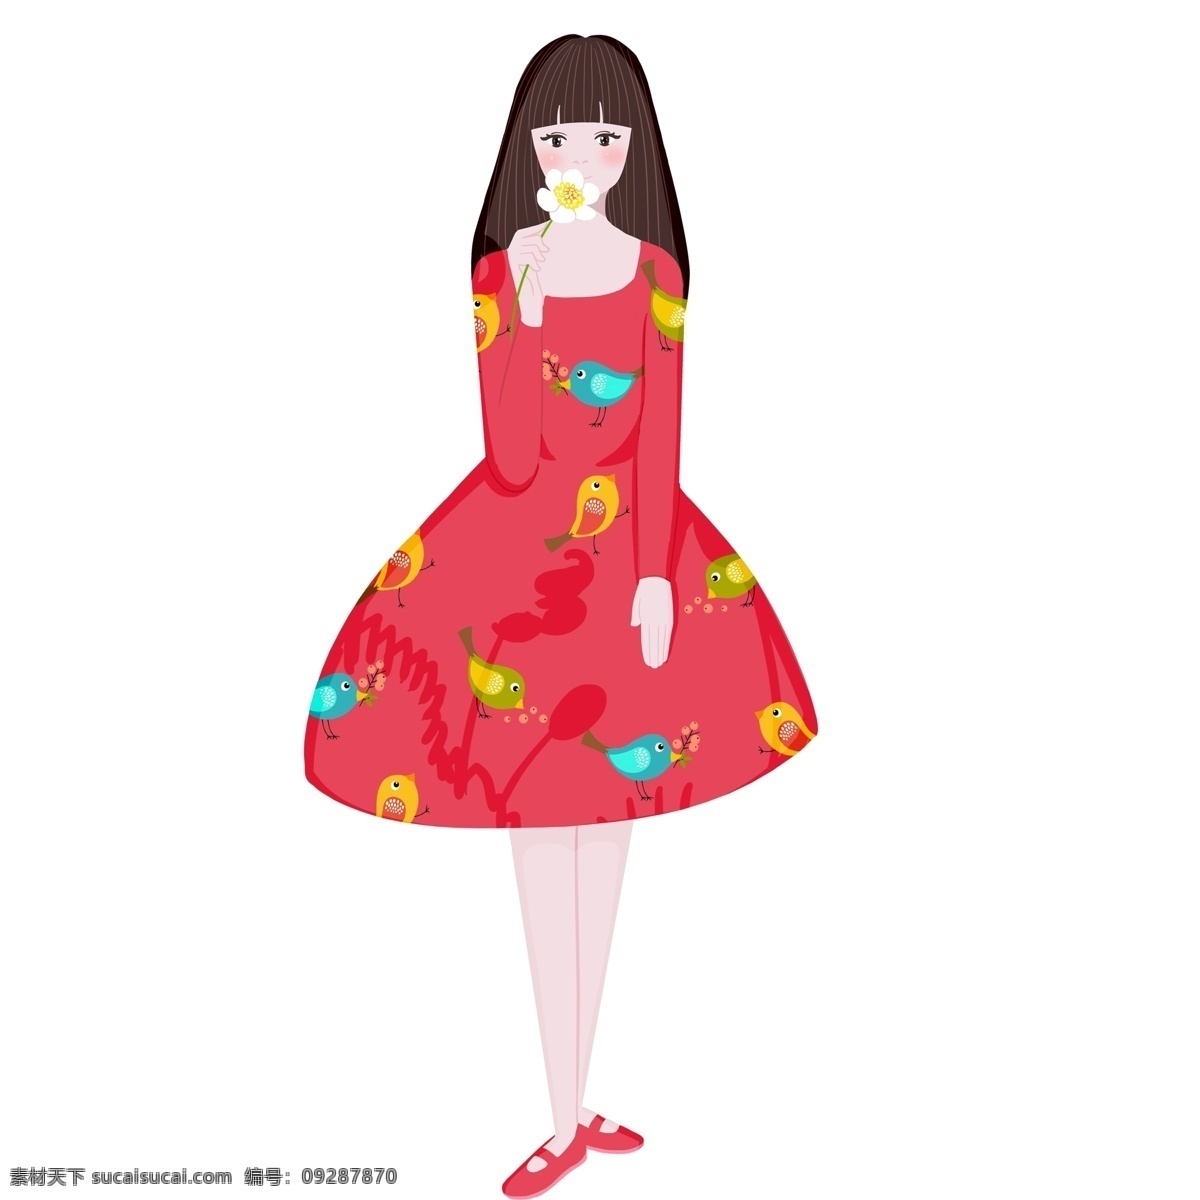 红色 裙子 小女孩 图案 水彩画 插画 绘画 卡通 彩色 创意 设计元素 简约 现代 时尚 小清新 文艺 文雅 精致精美 绘画手稿